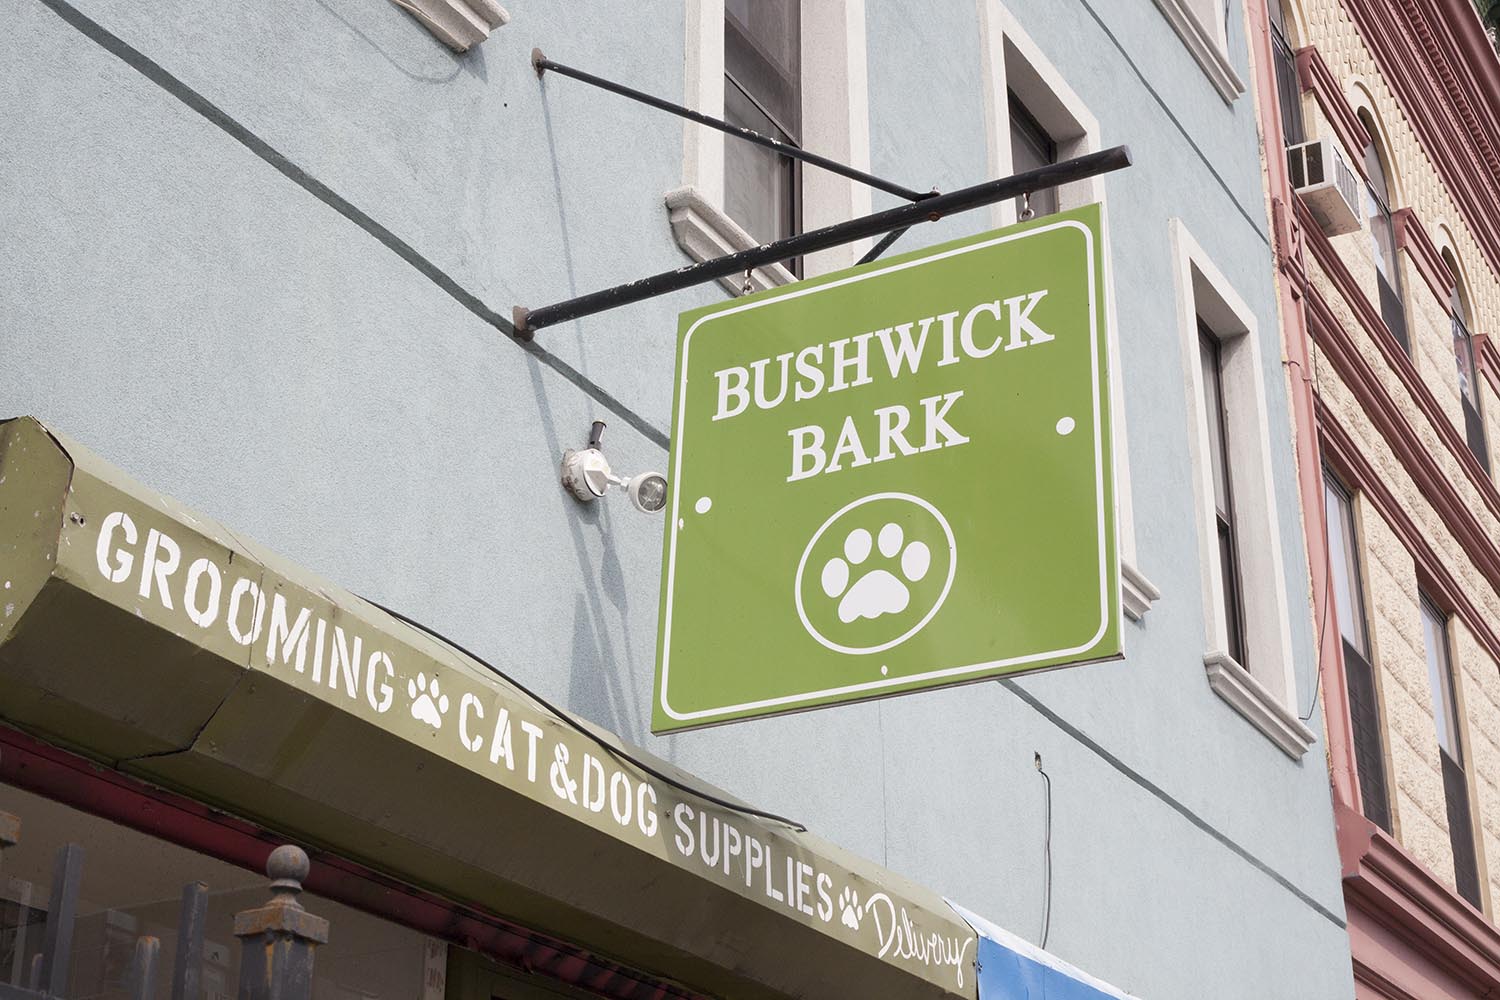 Bushwick Bark